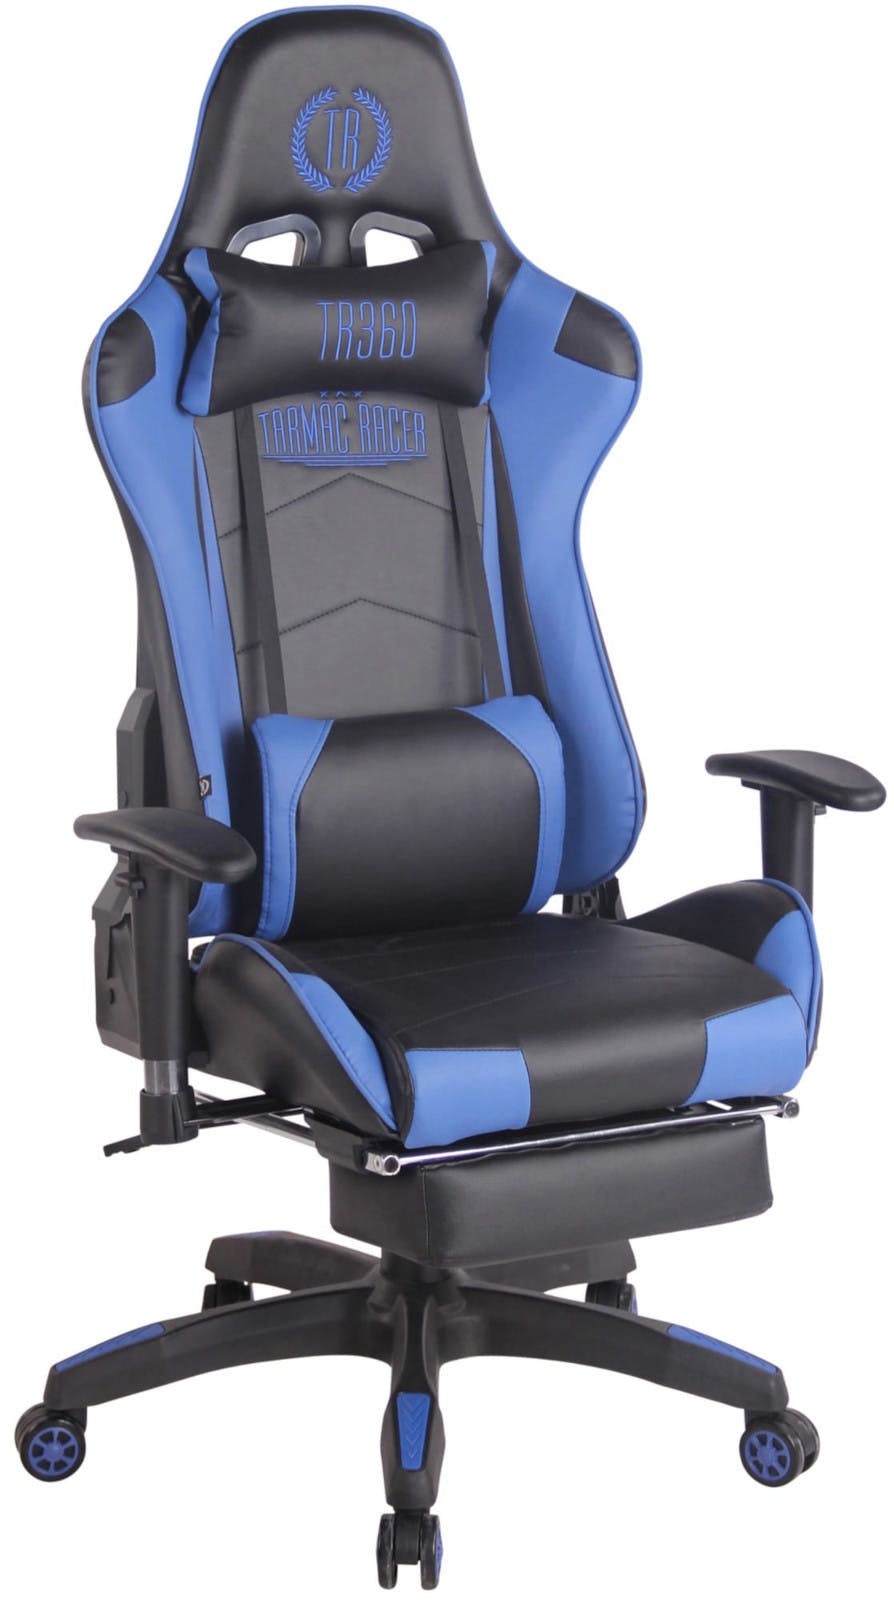 taal Slot ik zal sterk zijn Racing bureaustoel XL Turbo met voetsteun zwart/blauw | MAKRO Webshop